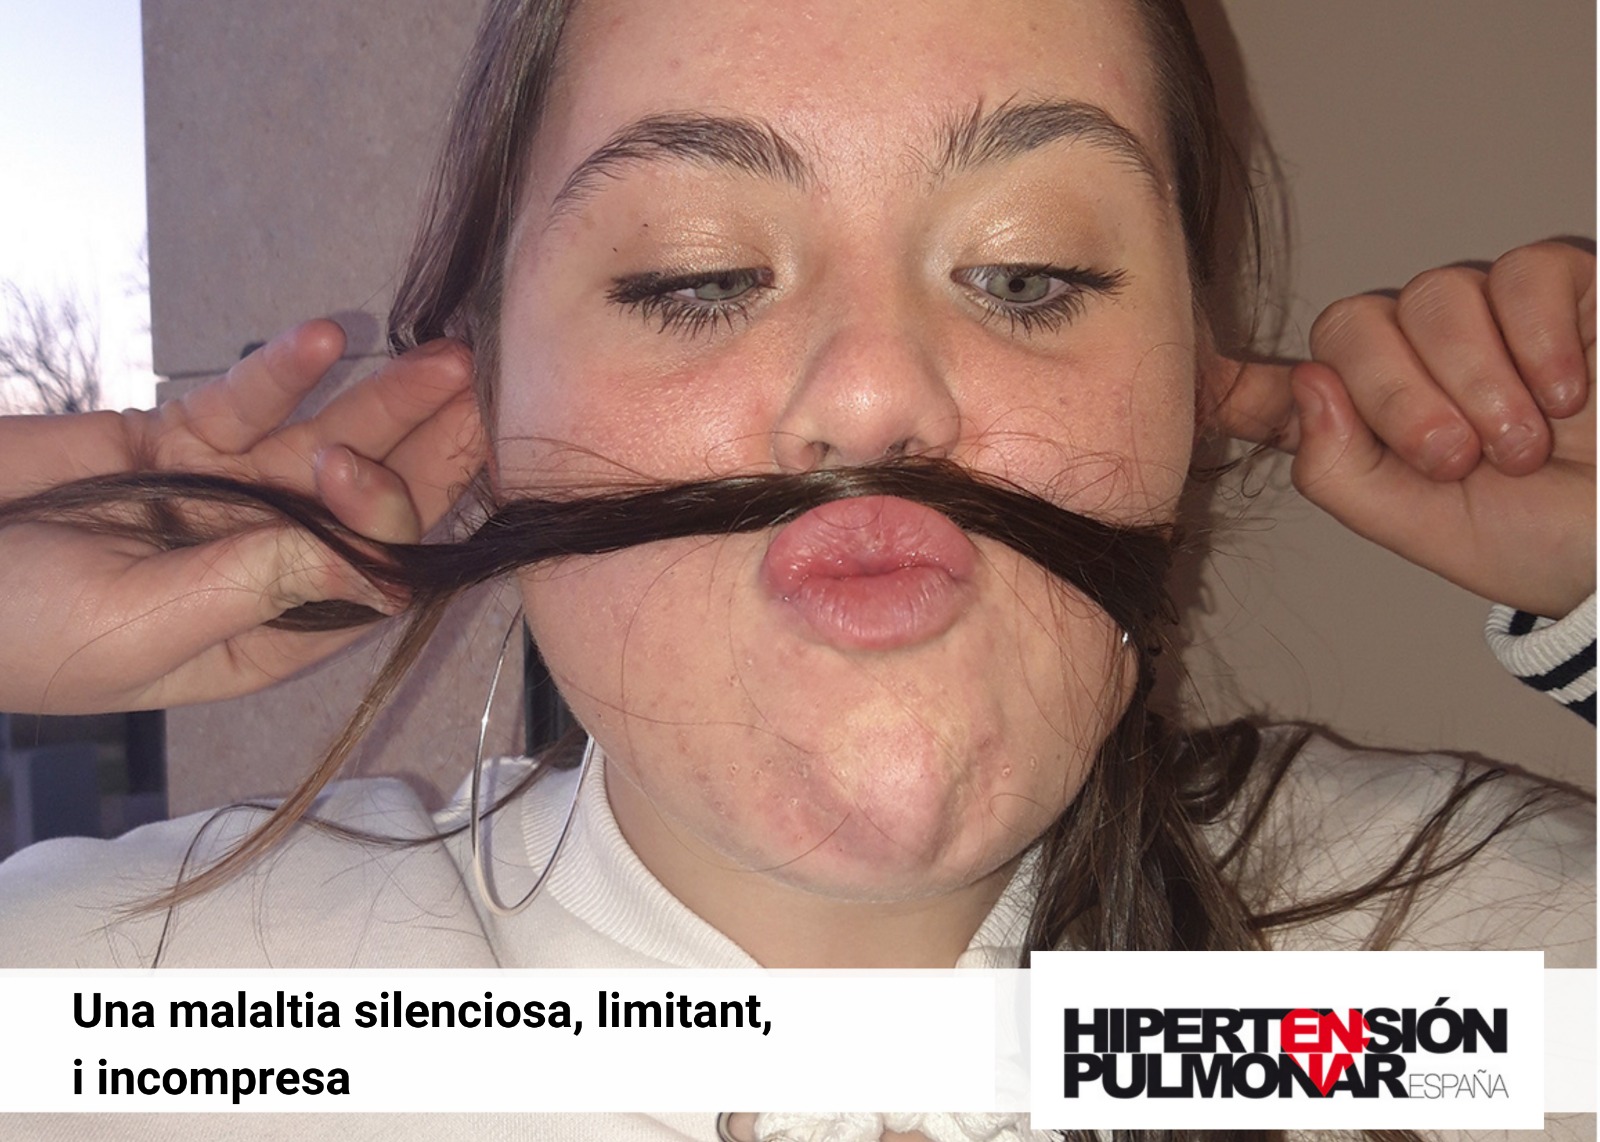  Peu de foto, logo de l’Associació d’Hipertensió Pulmonar d’Espanya. Fotografia de la cara d’una noia fent el gest amb els seus cabells posats sota el nas, com si fos el tub respiratori.